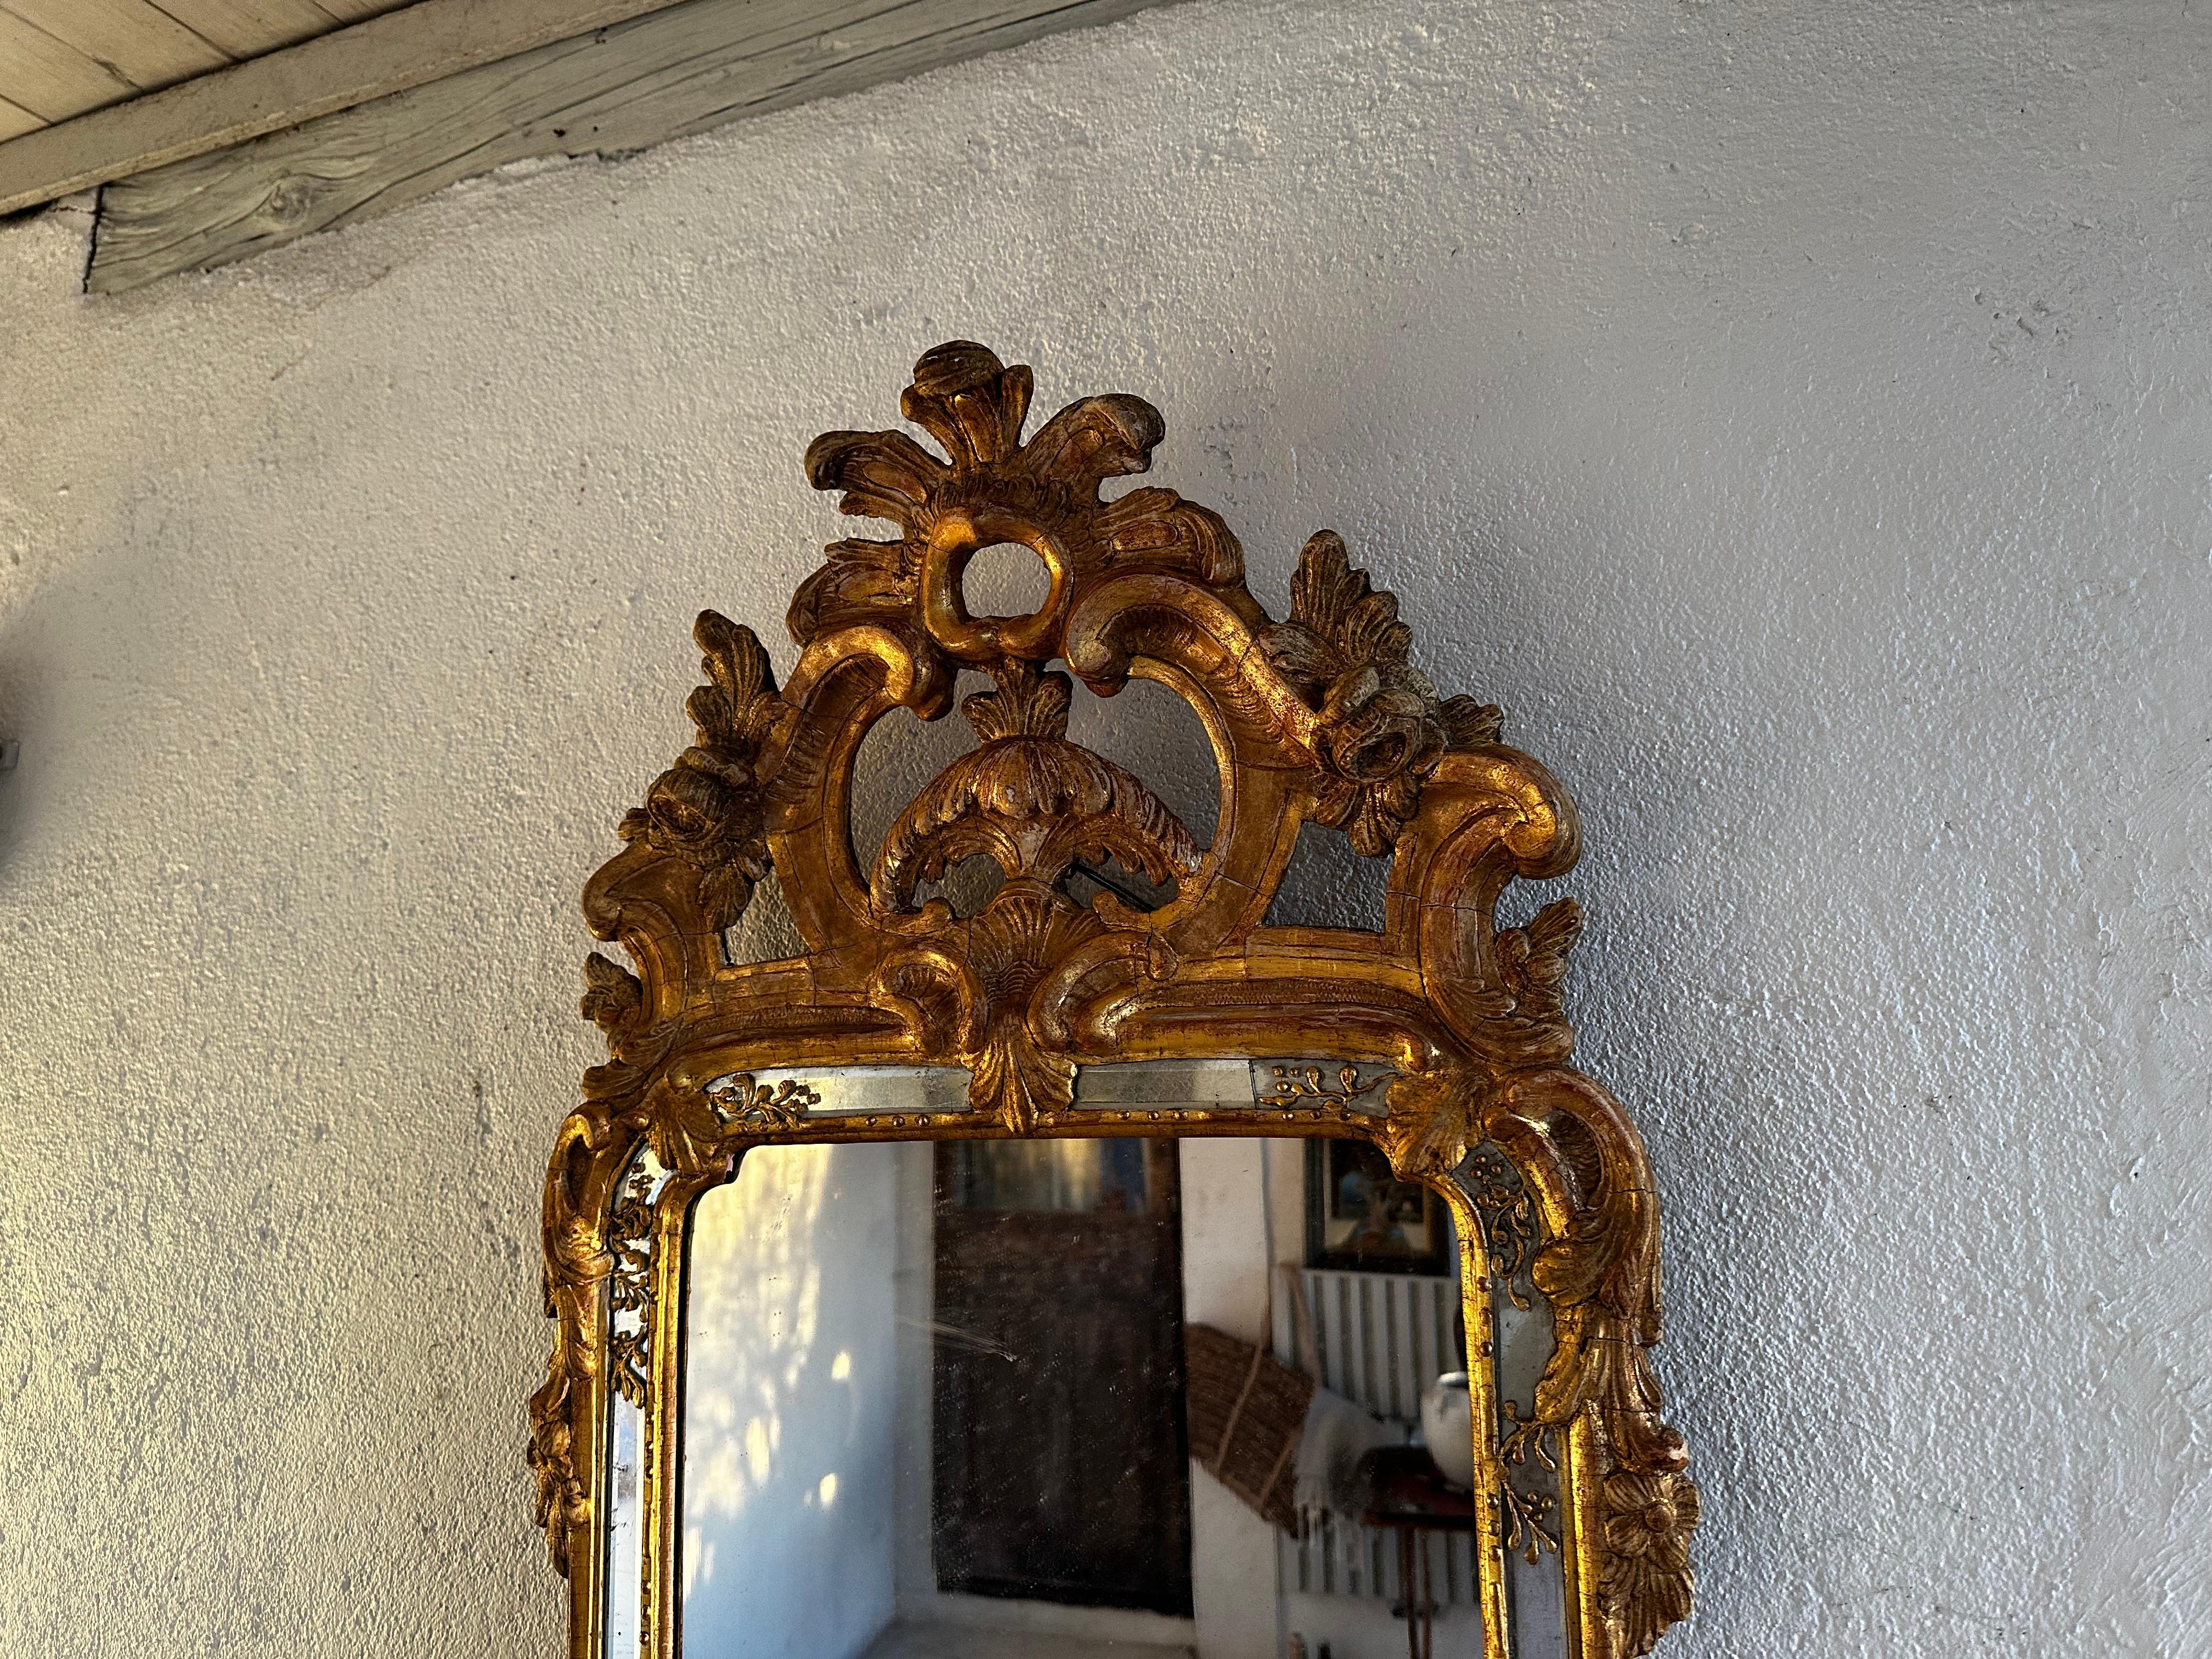 Dieser Rokokospiegel wird Niclas Meunier, 1754-97, zugeschrieben. Ab 1769 arbeitete er in Stockholm als königlicher Spiegelmacher. Schöner Aufsatz mit Rocaille, Voluten und Akanthus. Der untere Teil ist ebenfalls mit einer Rocaille verziert. Feine